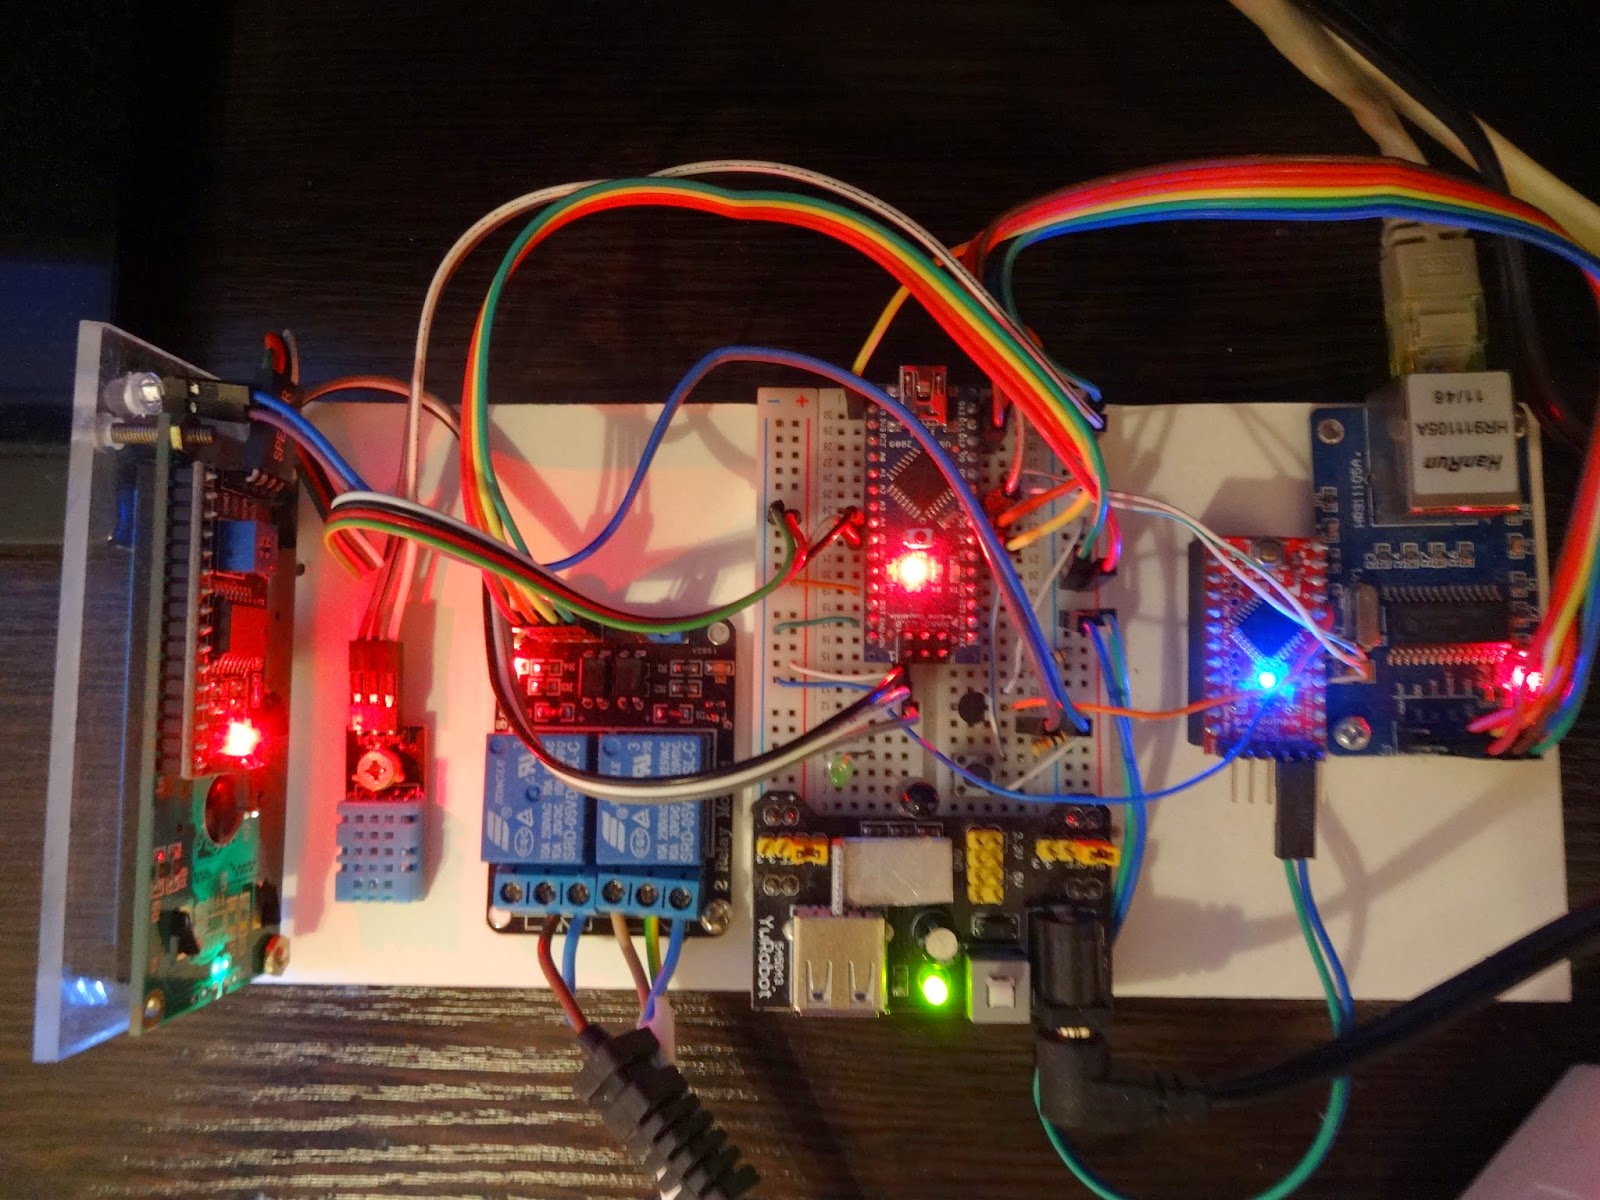 Умный дом на базе Arduino. Умный нагревательный прибор на базе ардуино. Ардуино фото. Arduino server